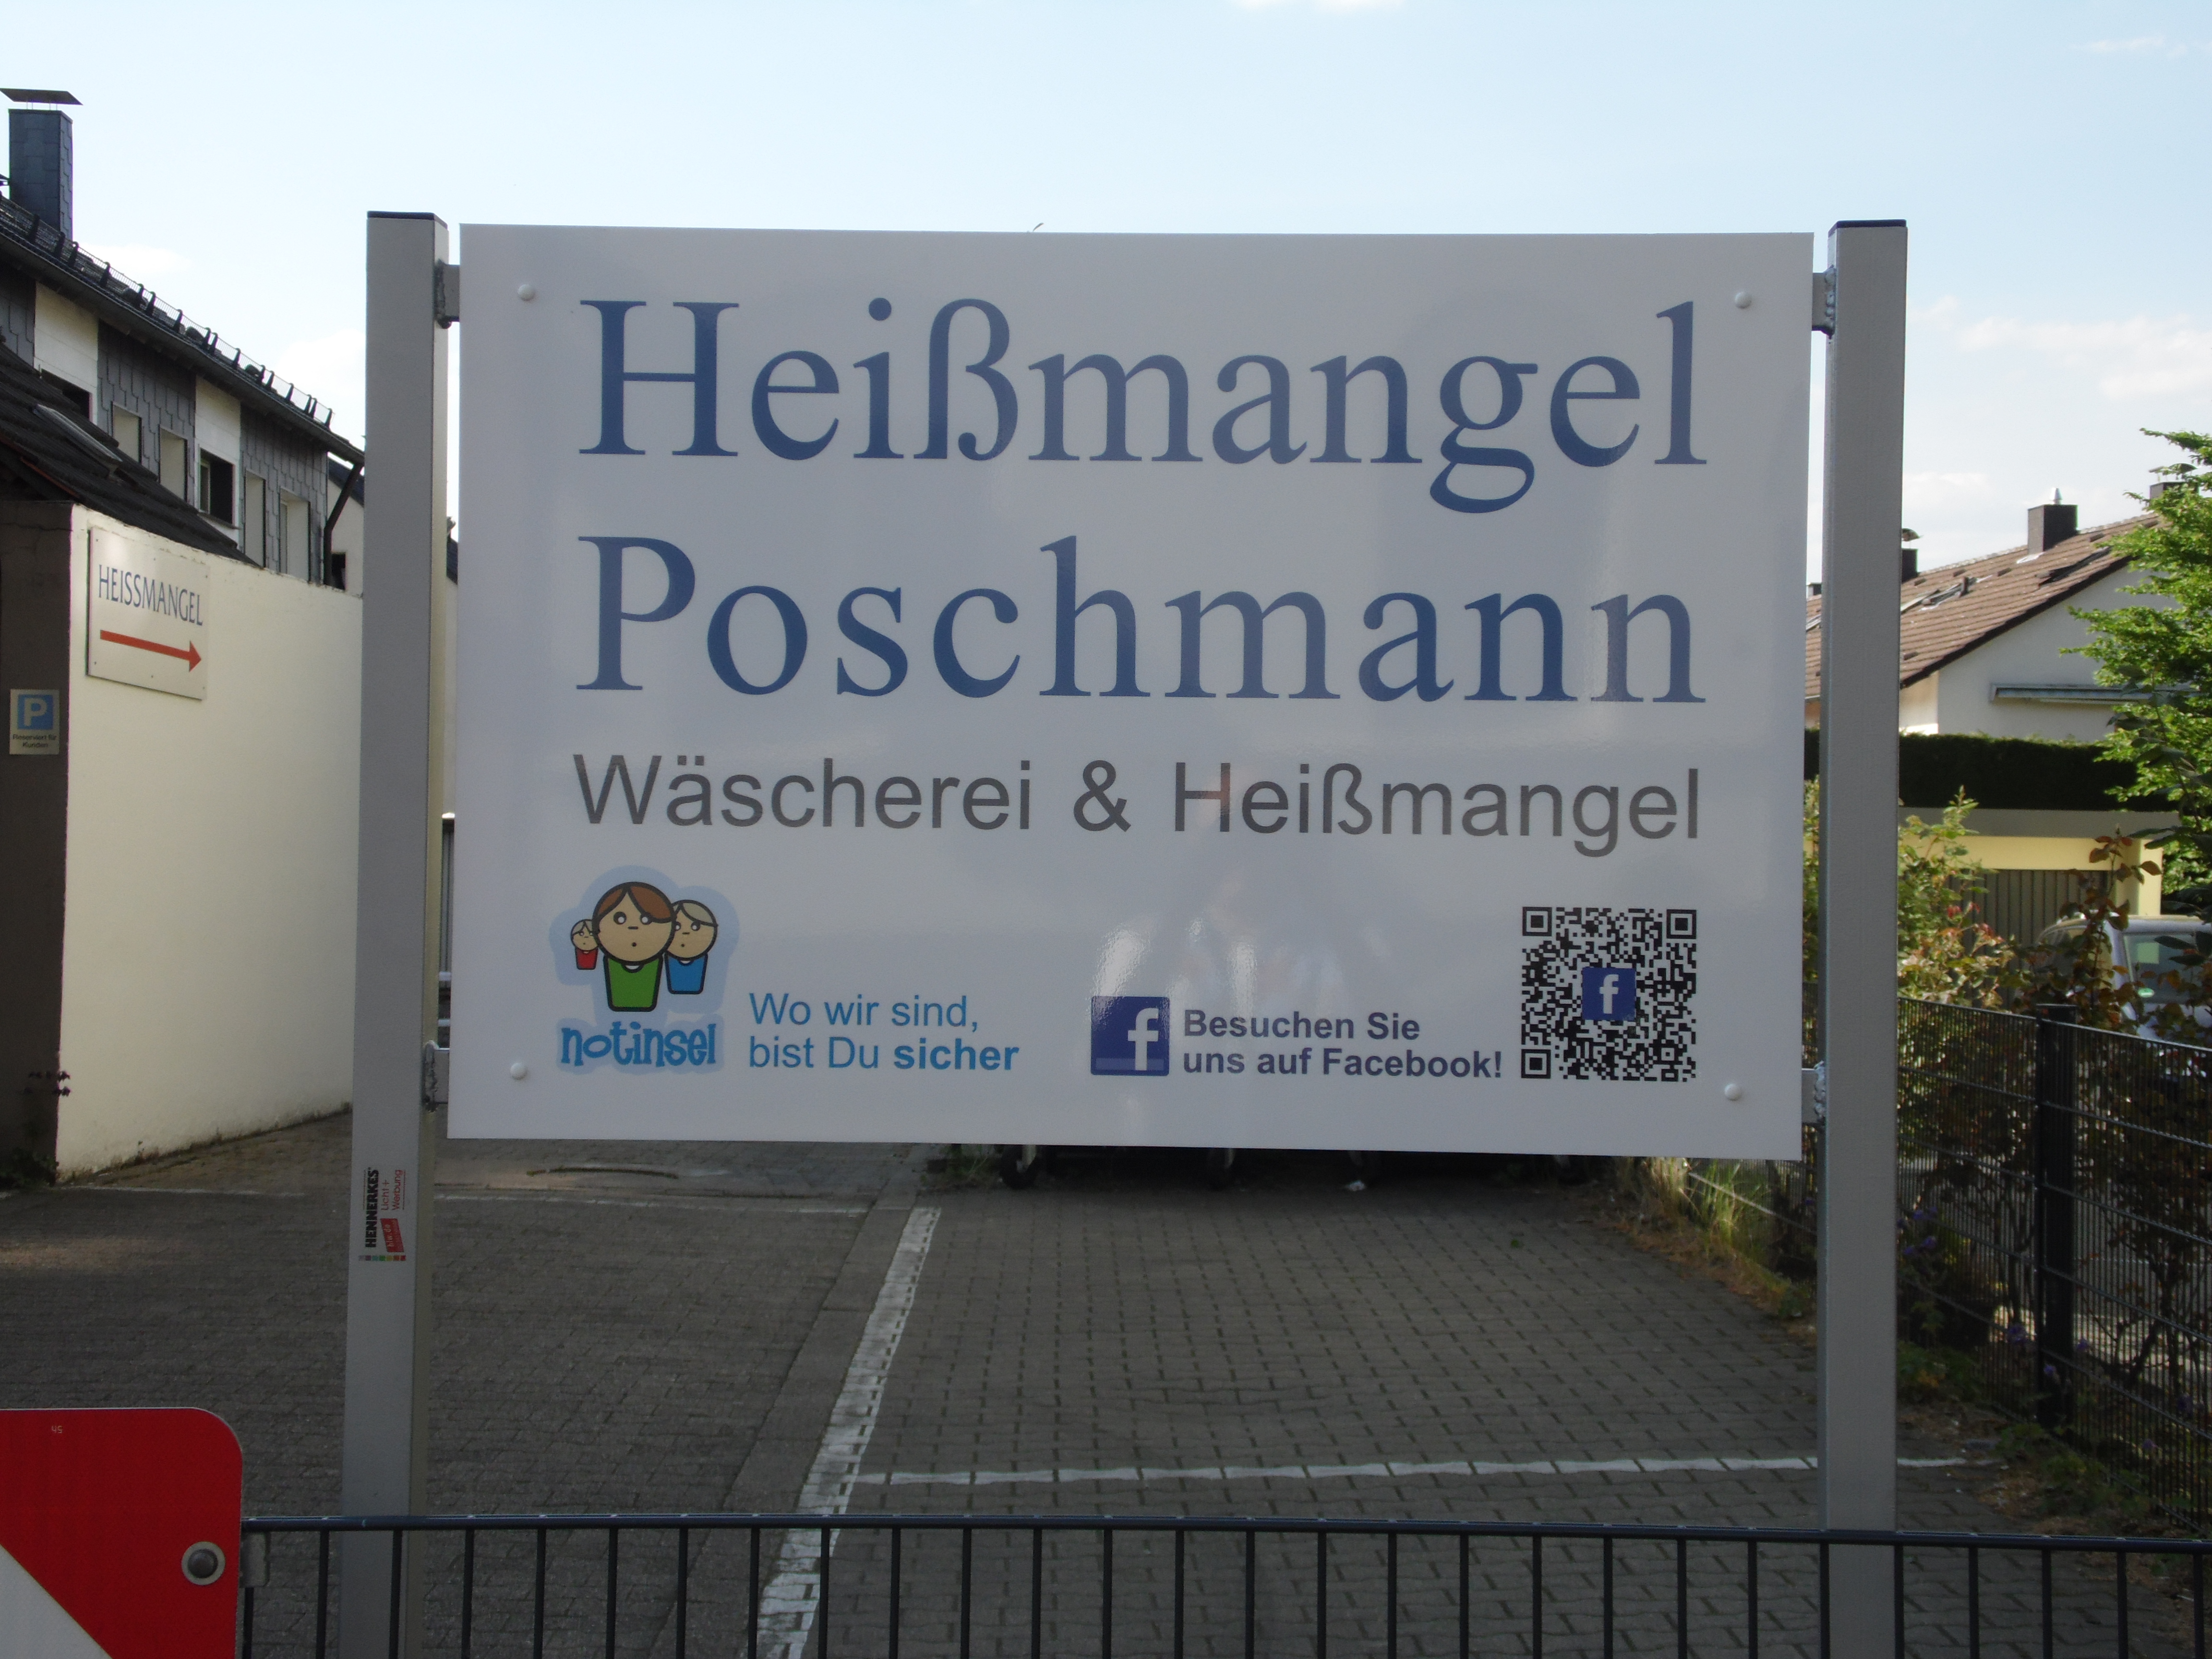 Bild 2 Heißmangel Poschmann in Bochum